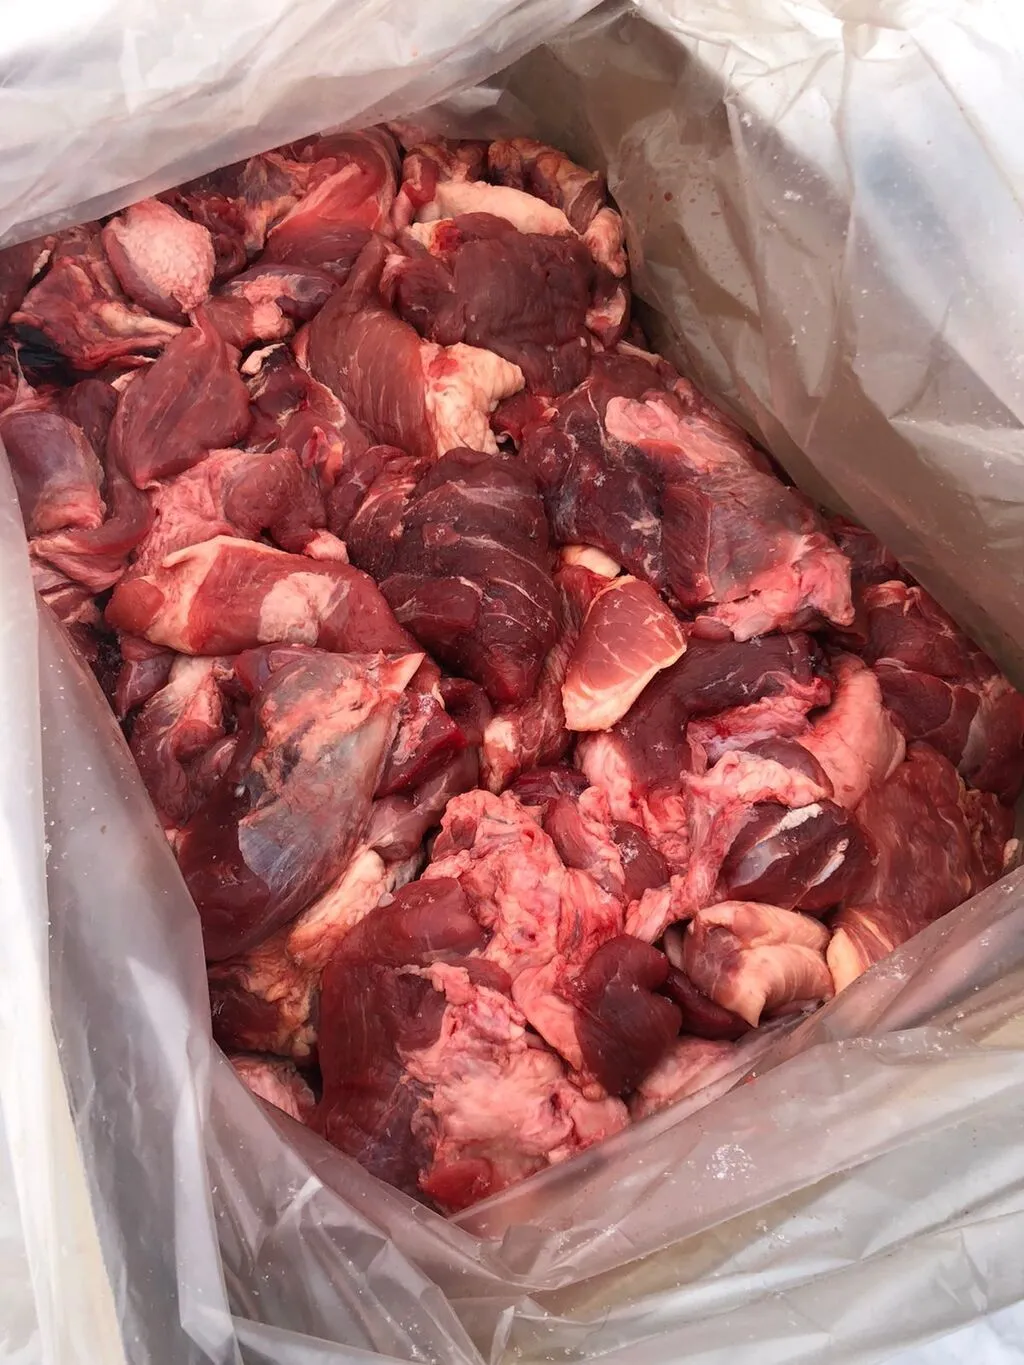 мясная обрезь свиная  в Орле